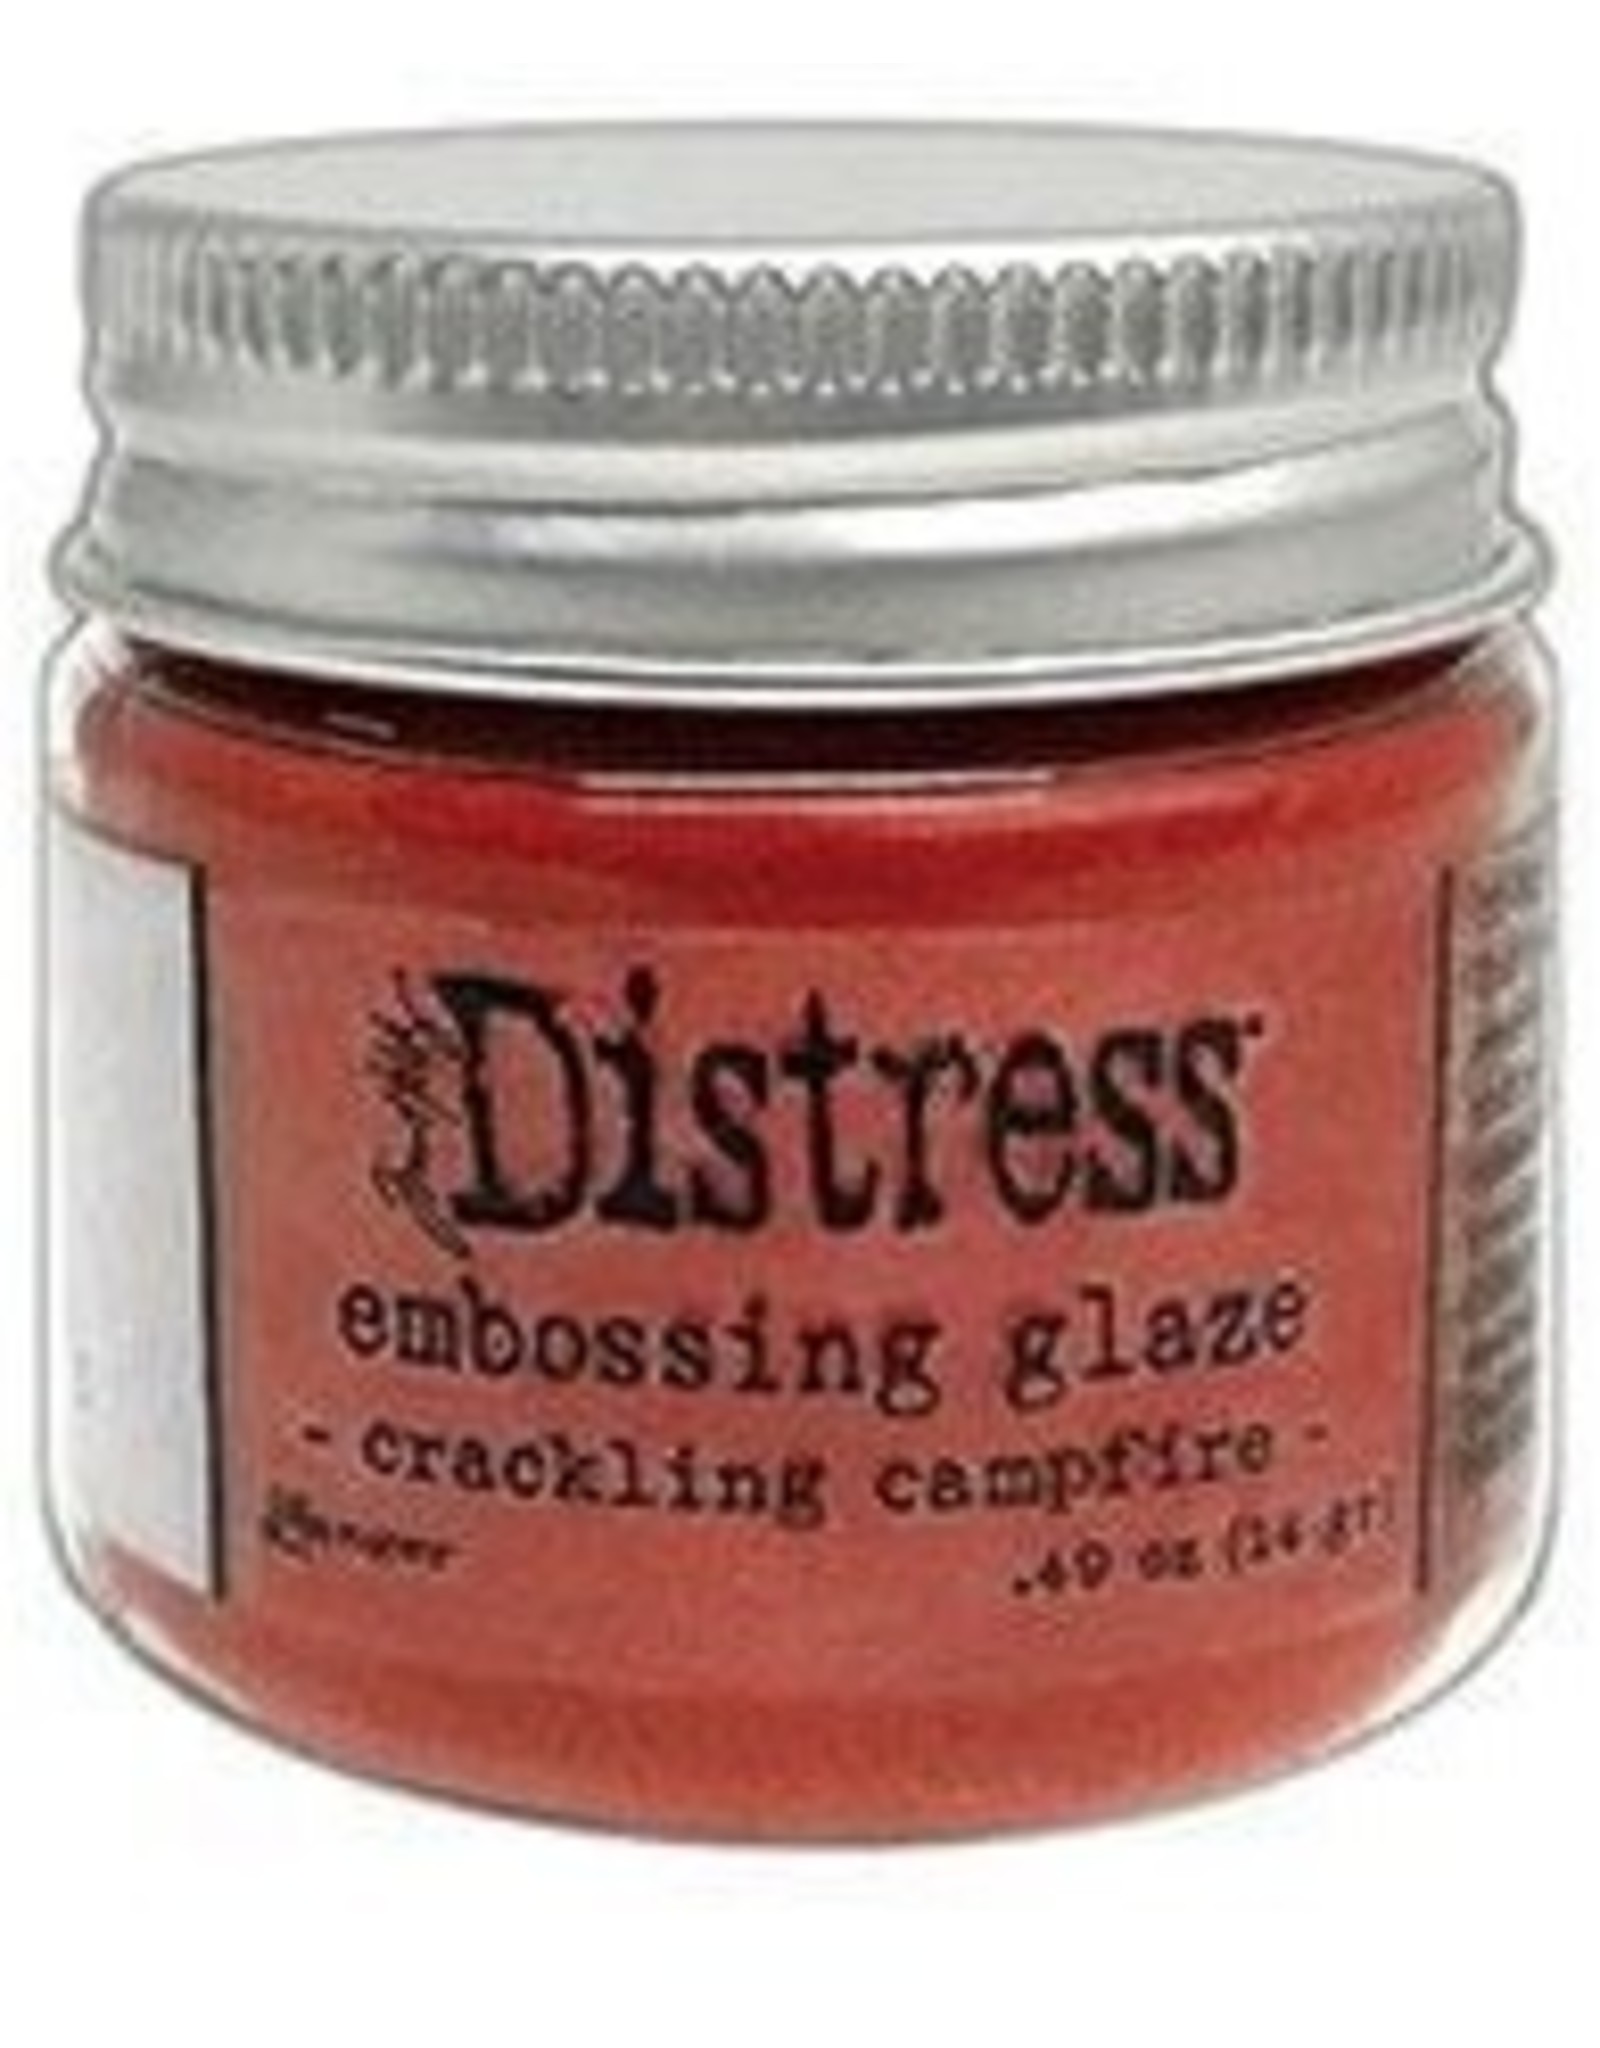 Tim Holtz - Ranger Distress Embossing Glaze Crackling Campfire